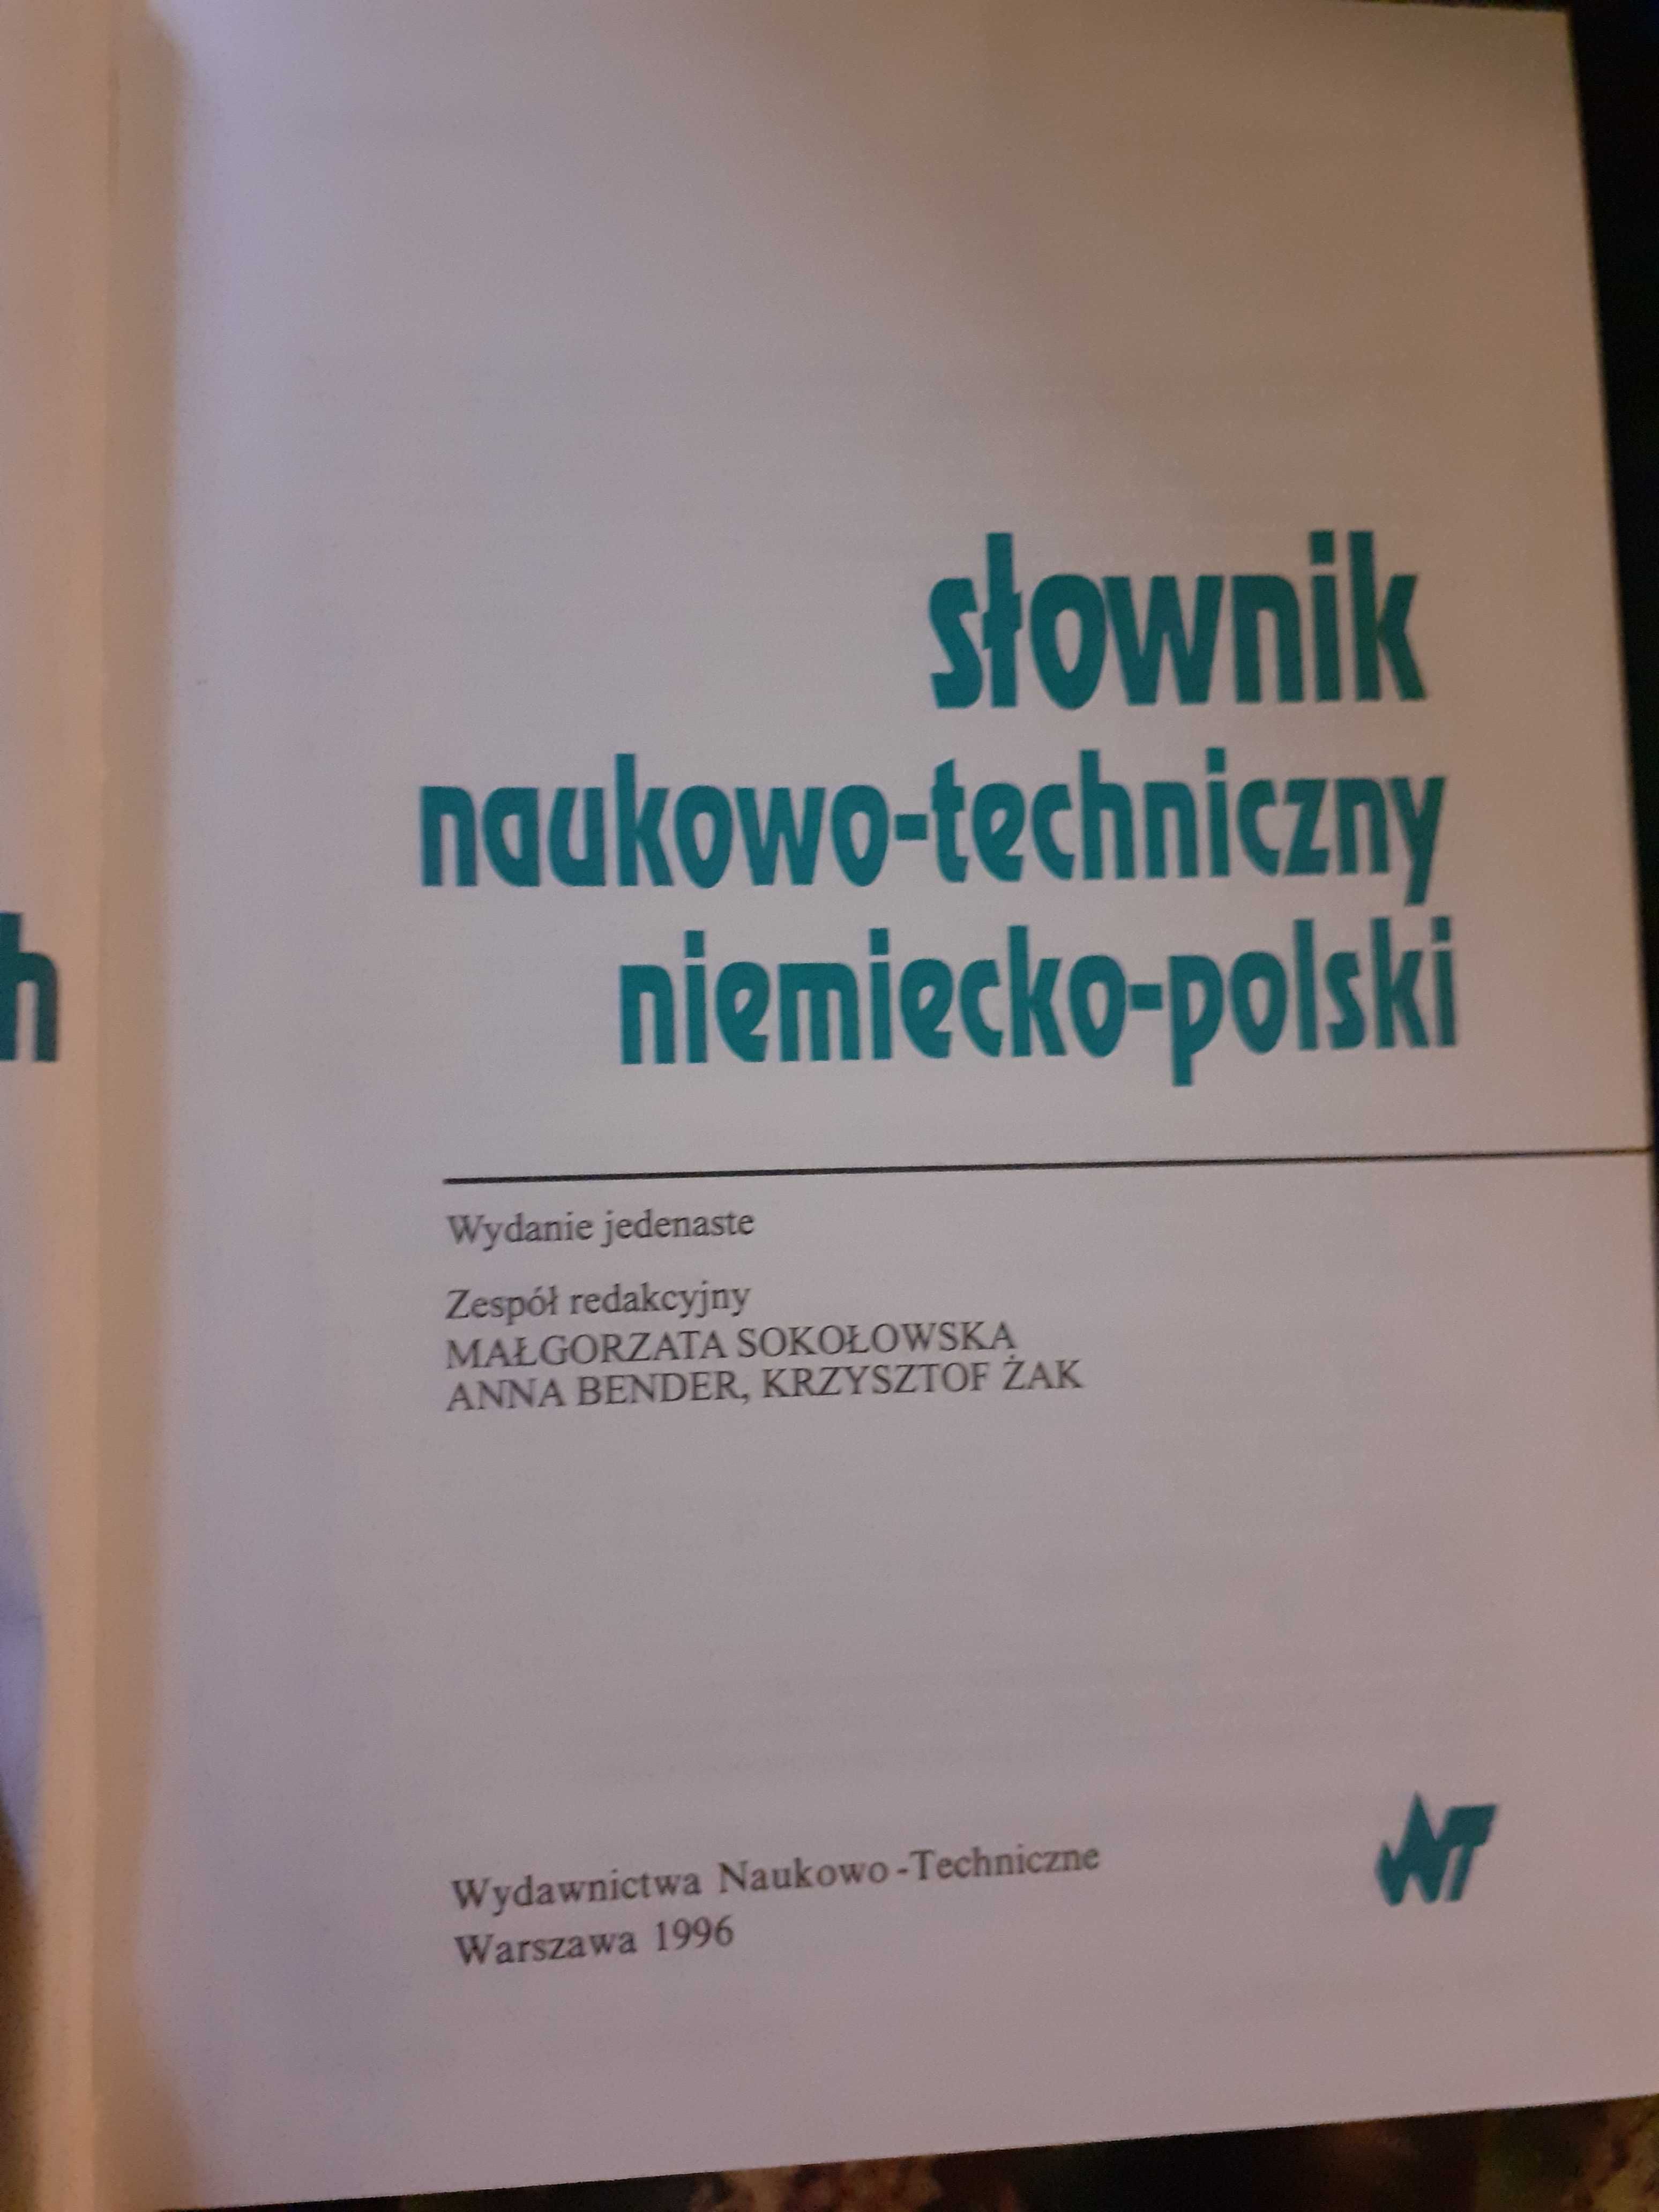 słownik techniczny polsko-niemiecki i niemiecko-polski - komplet